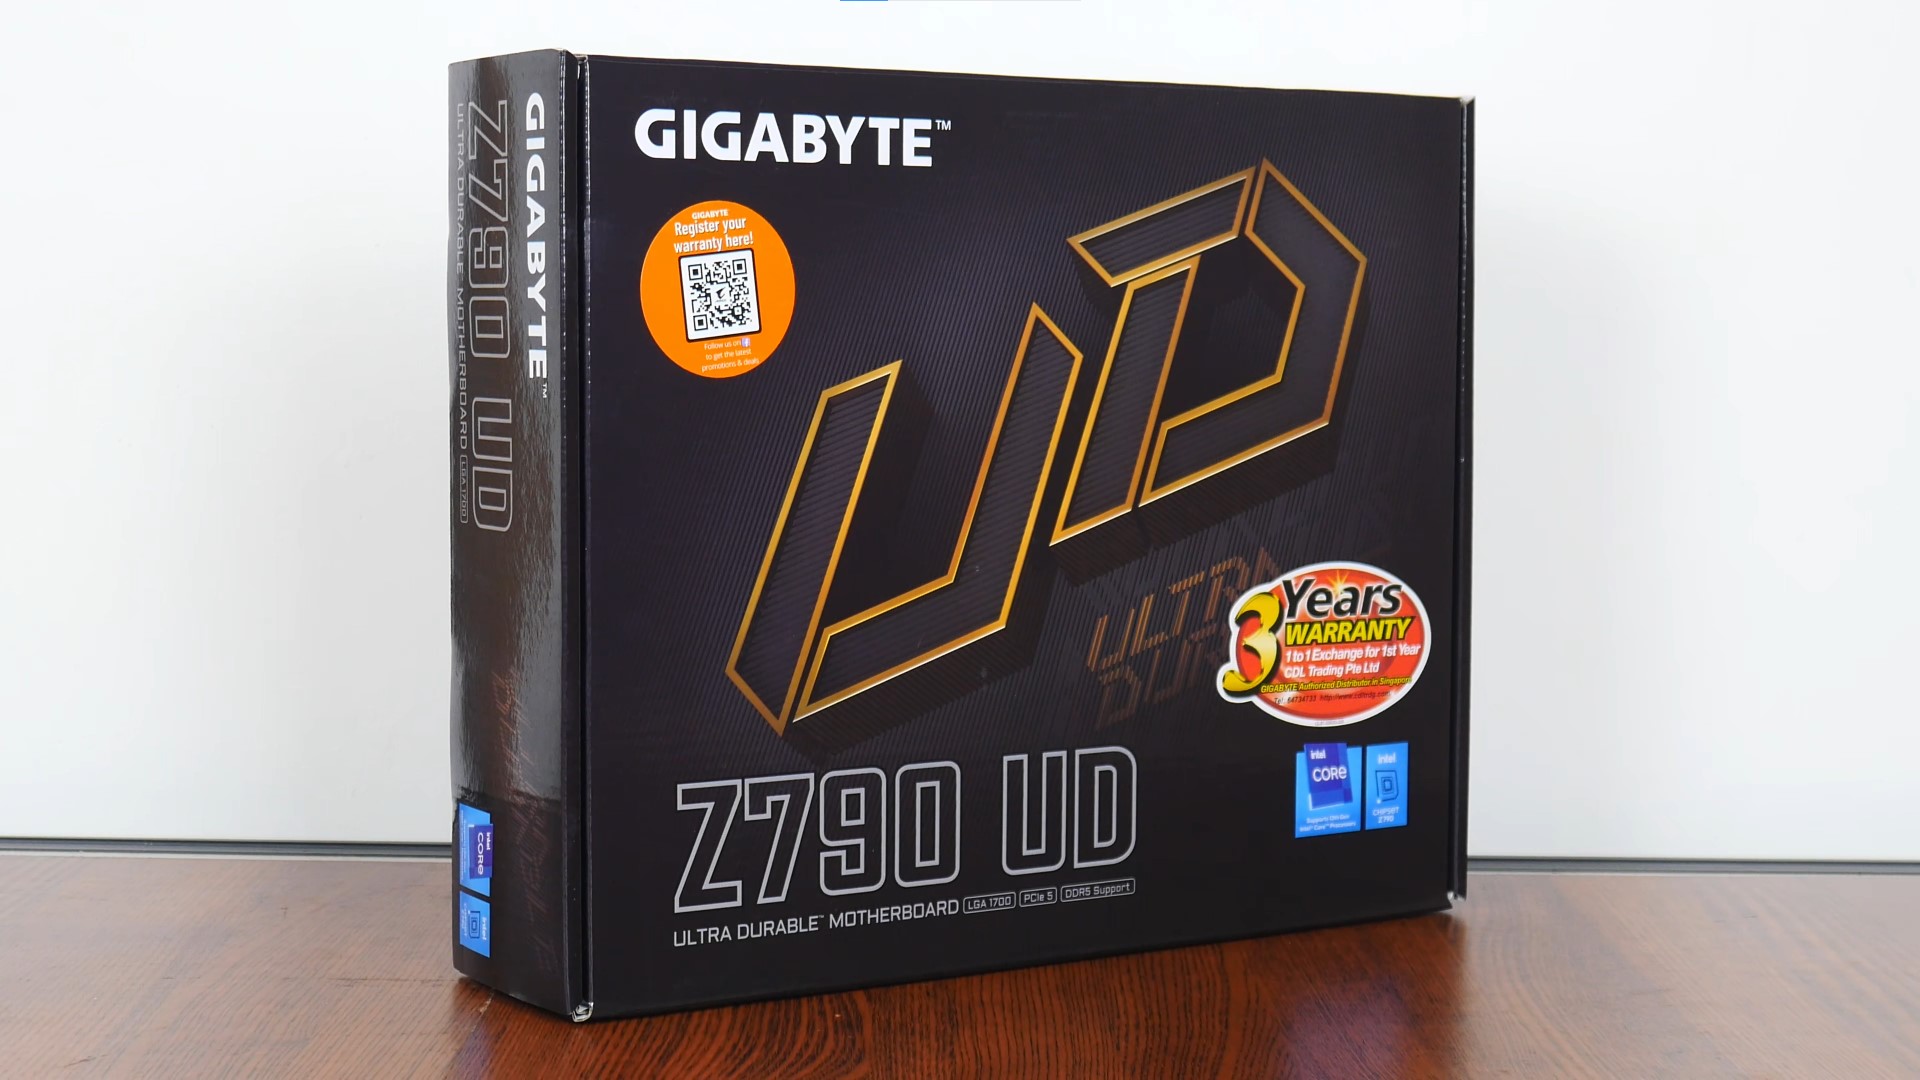 Gigabyte Z790 UD Packaging (Front)